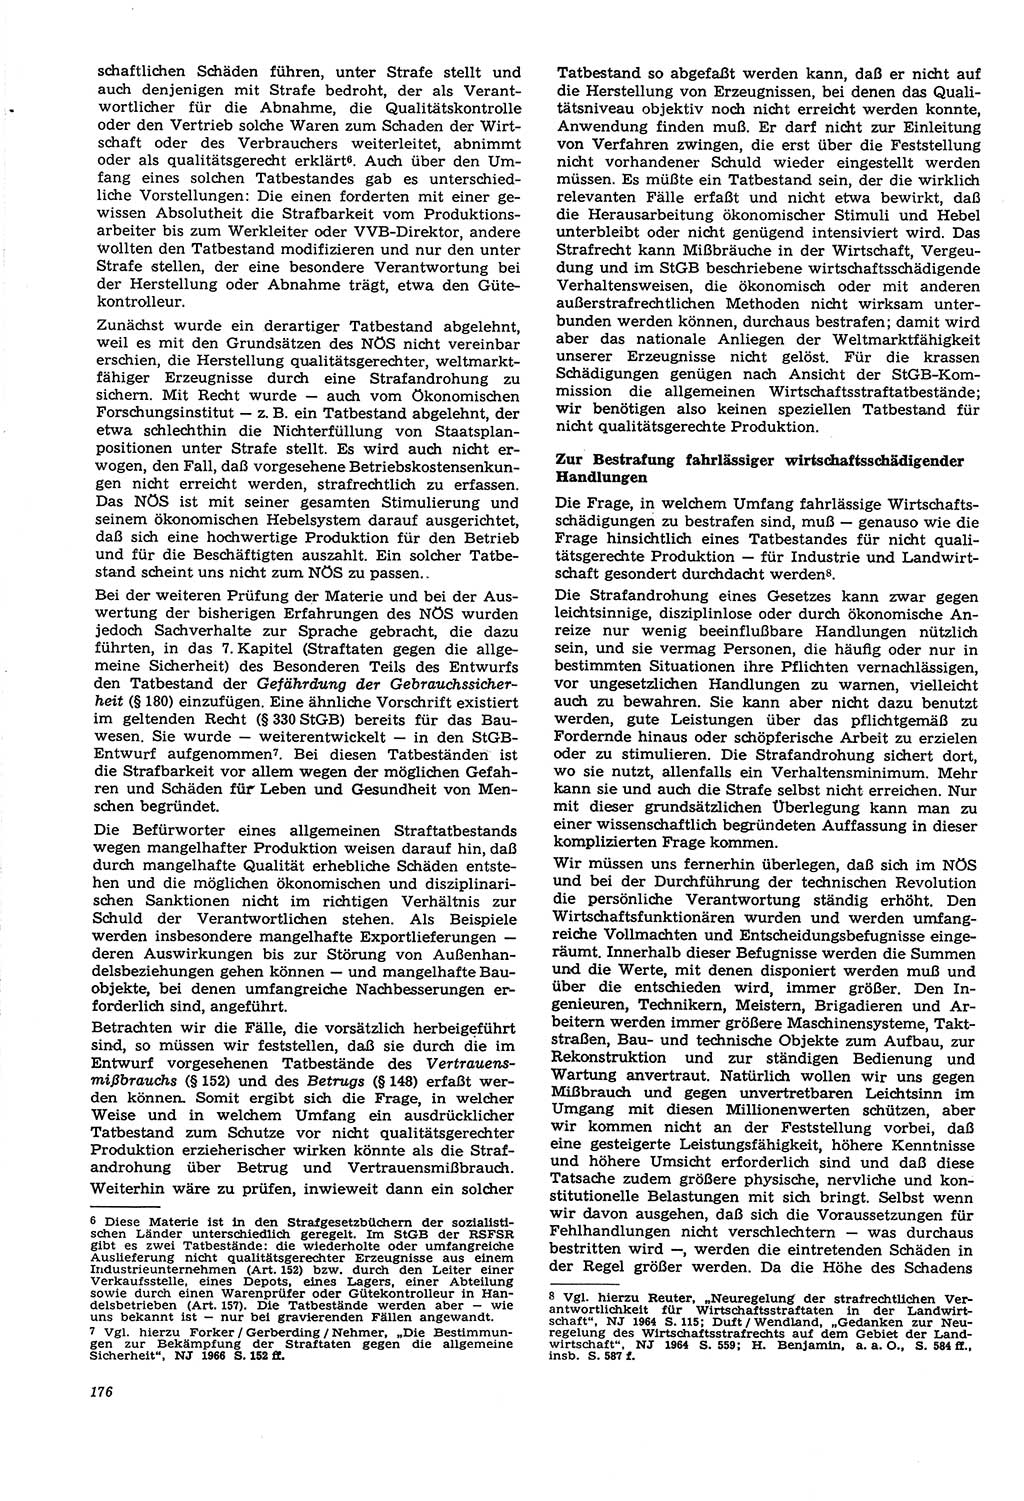 Neue Justiz (NJ), Zeitschrift für Recht und Rechtswissenschaft [Deutsche Demokratische Republik (DDR)], 21. Jahrgang 1967, Seite 176 (NJ DDR 1967, S. 176)